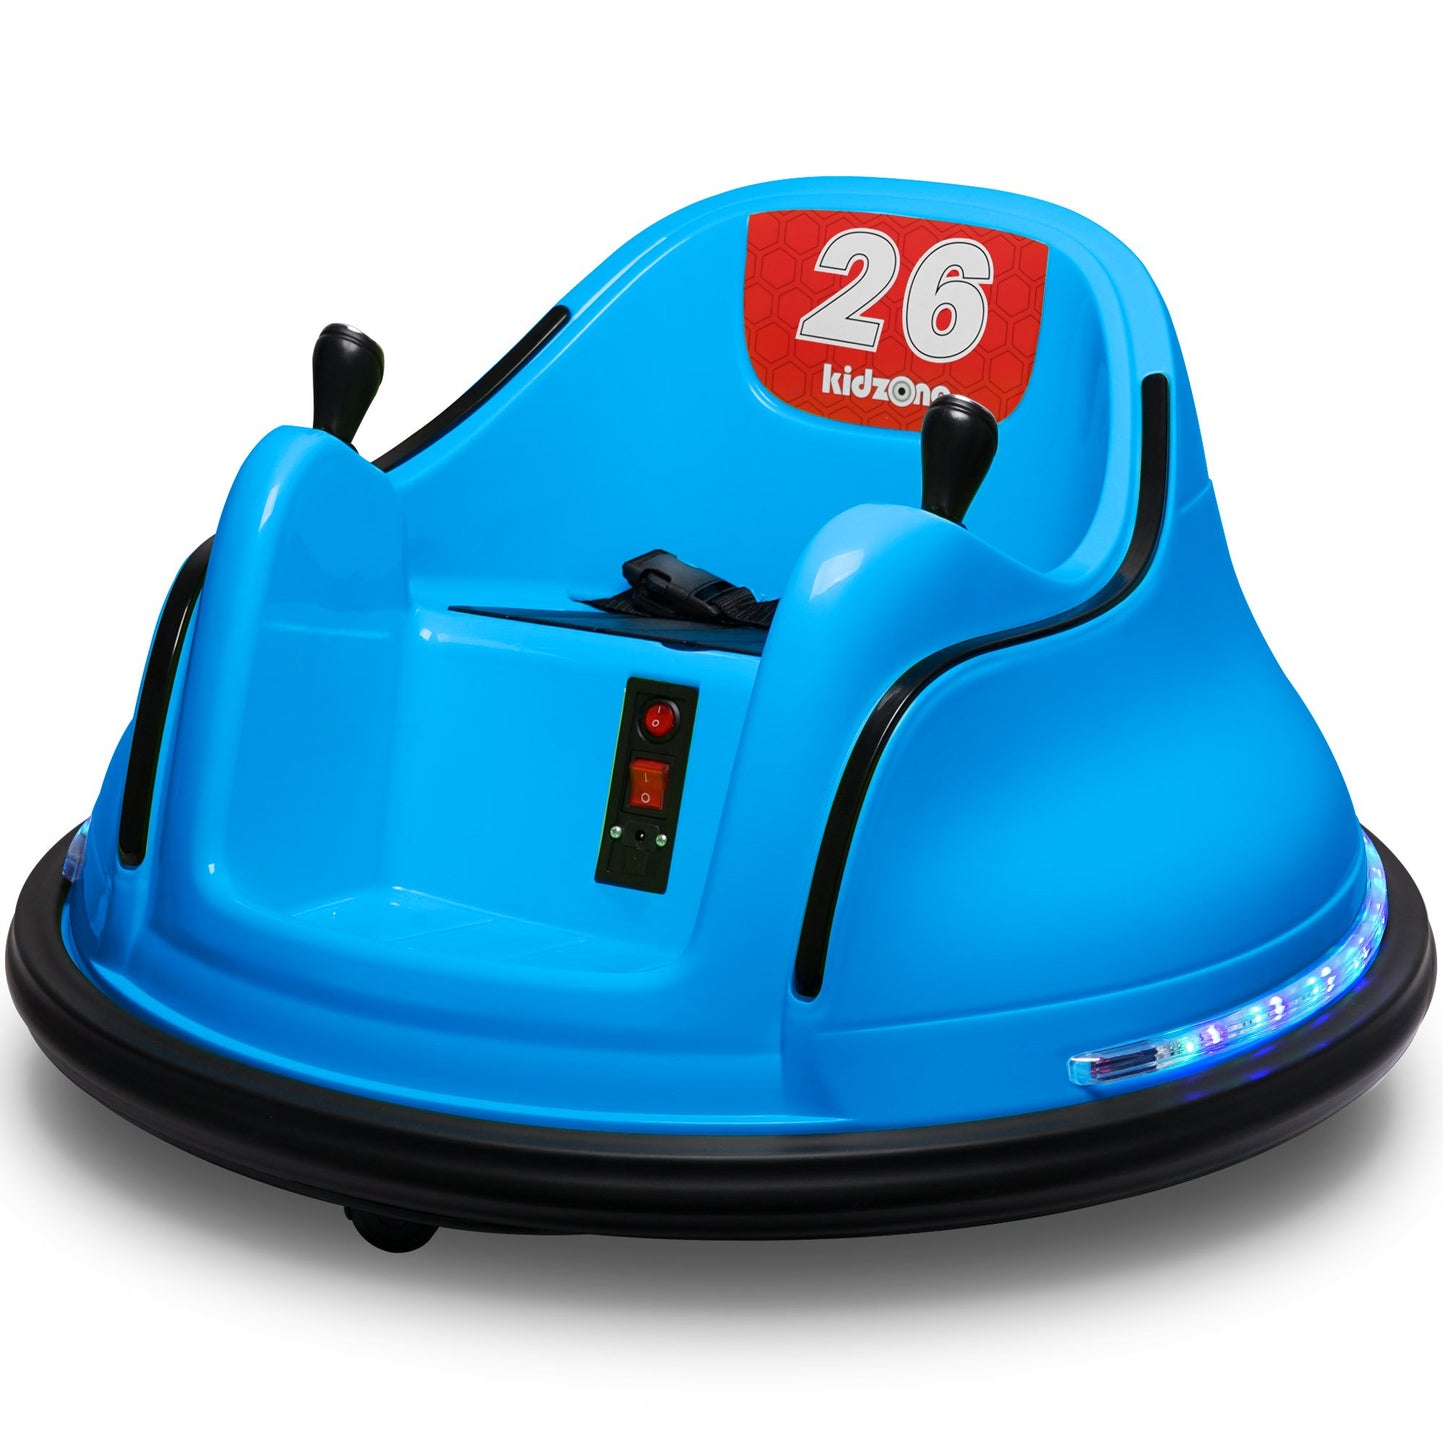 Kidzone DIY Número 6V Juguete para niños Paseo eléctrico en parachoques Coche Vehículo Control remoto 360 Spin Certificado ASTM 1,5-6 años